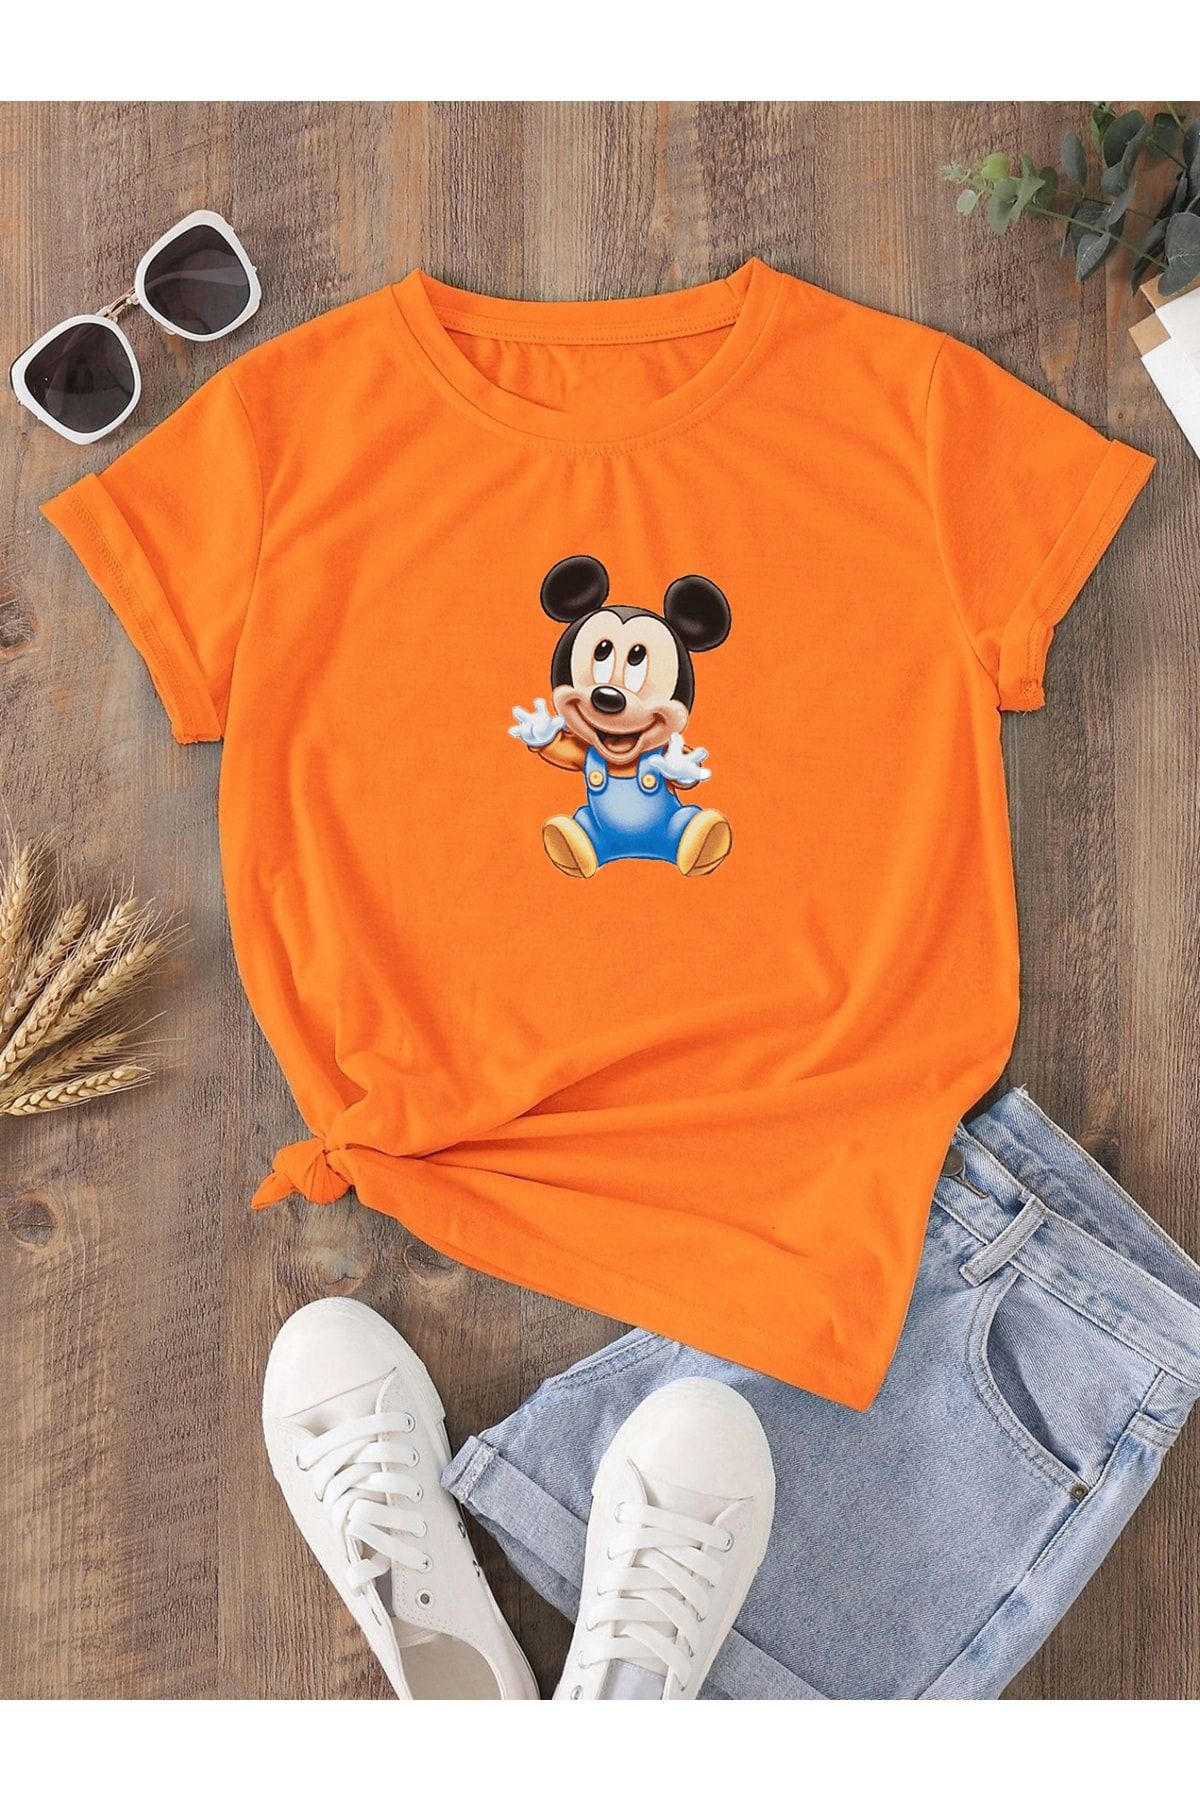 DUBU BUTİK Hamile Gebe T-shirt Bebek Mickey Mouse Baskılı - Turuncu Bisiklet Yaka Oversize Tişört